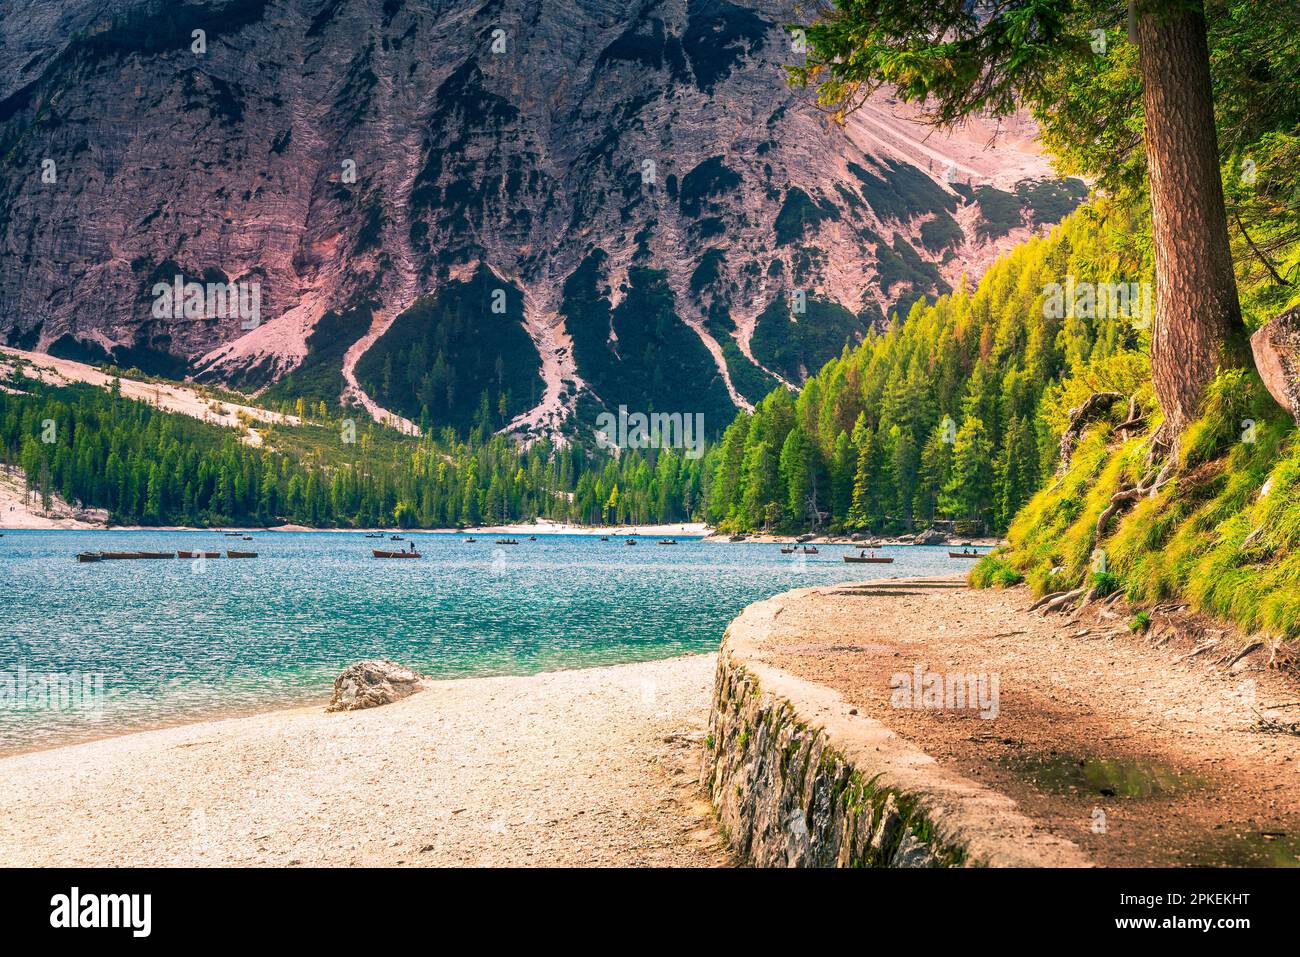 Dolomites, Italie. Lago di Braies, également connu sous le nom de Pragser Wildsee, superbe lac alpin dans le Tyrol du Sud, entouré de sommets imposants et de forêts verdoyantes Banque D'Images